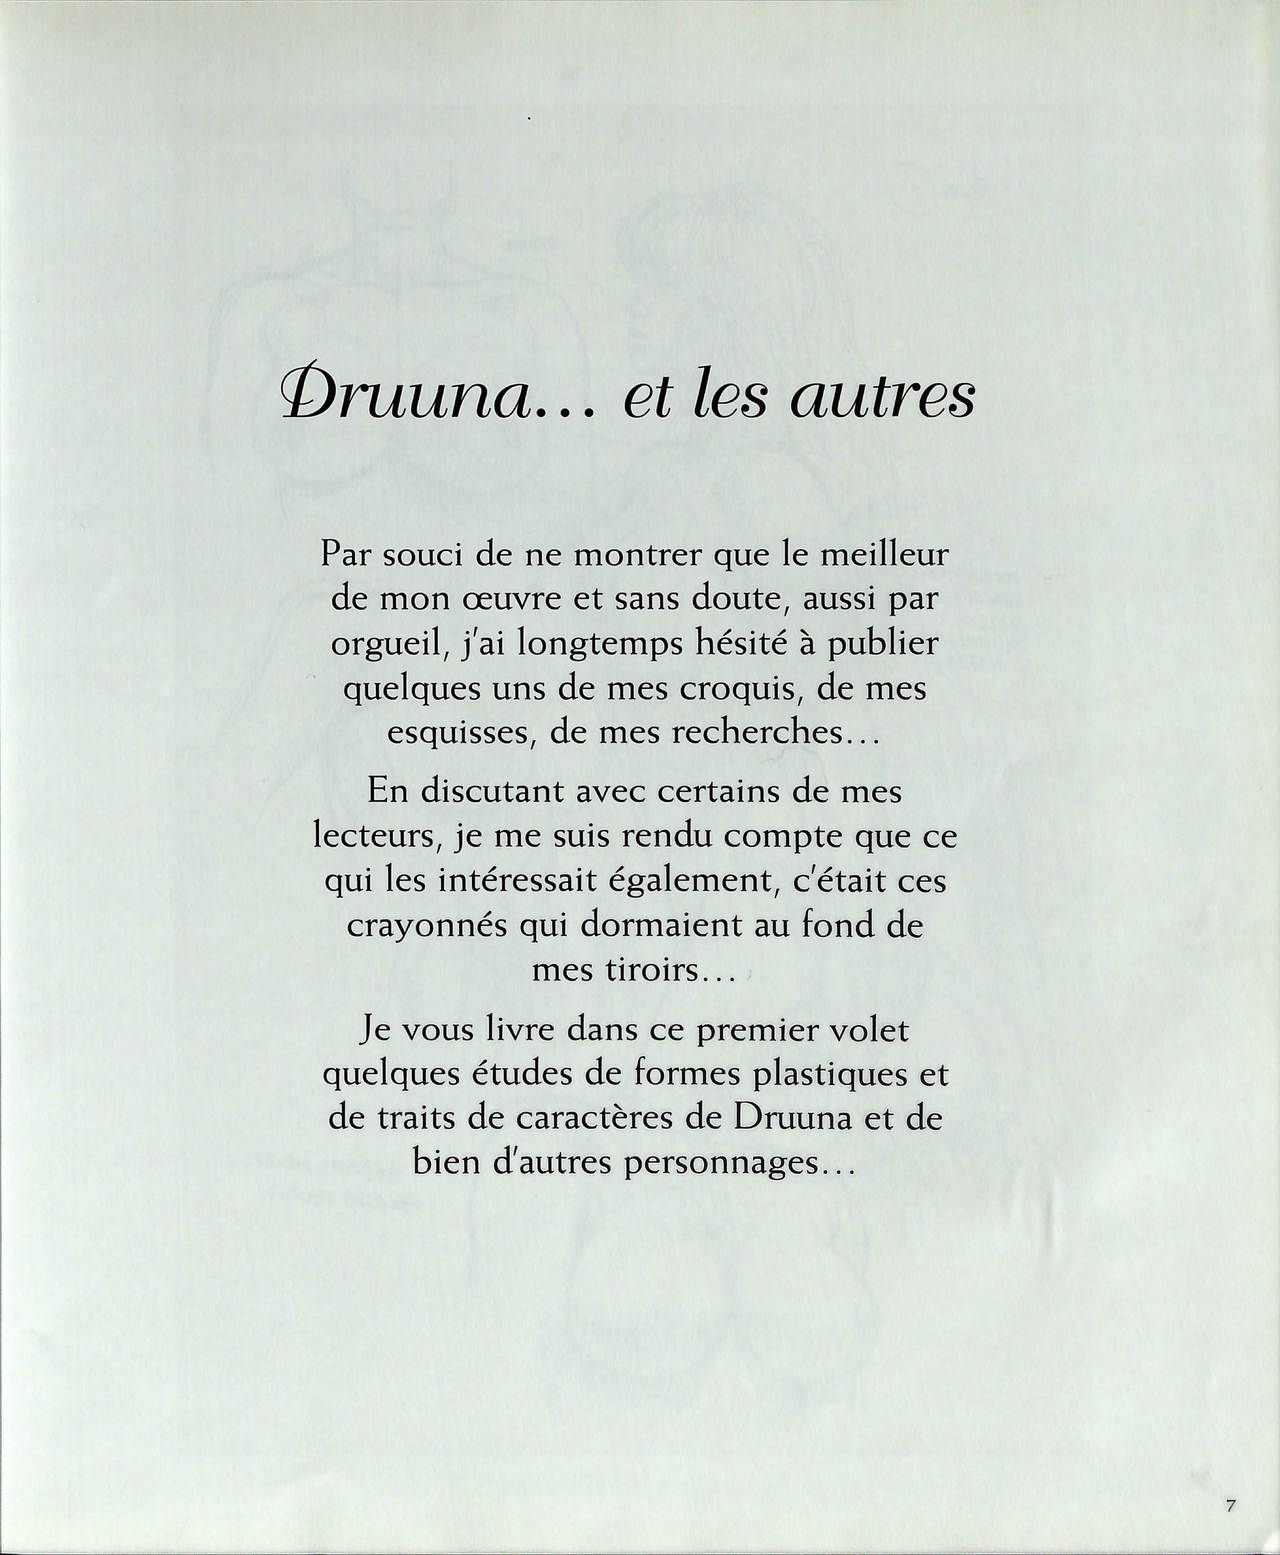 Druuna - Croquis et Esquisses numero d'image 45